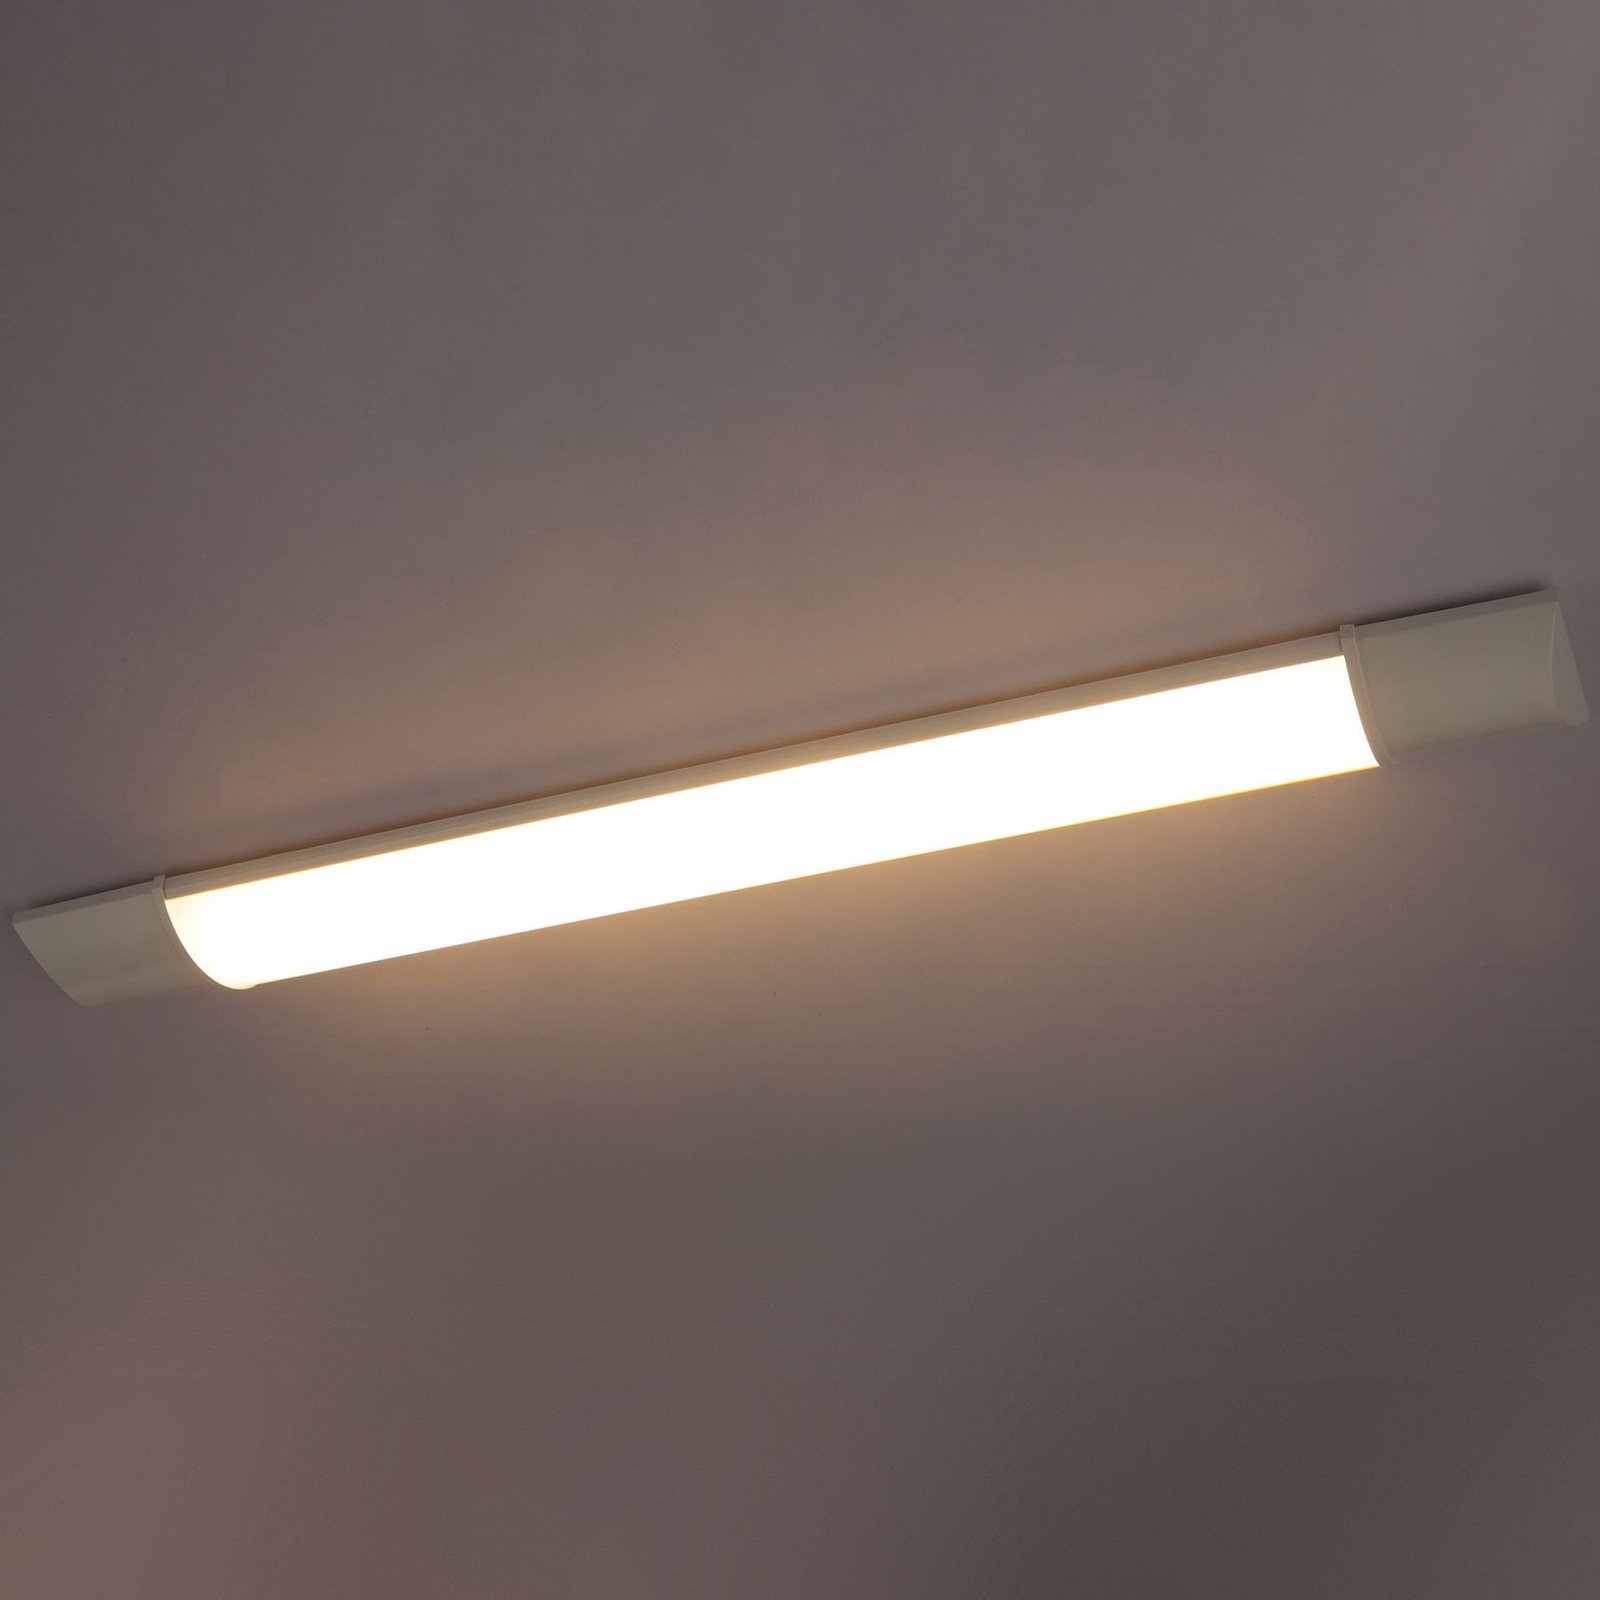 LED-es szekrény alatti lámpa Obara, IP20, 90 cm hosszú